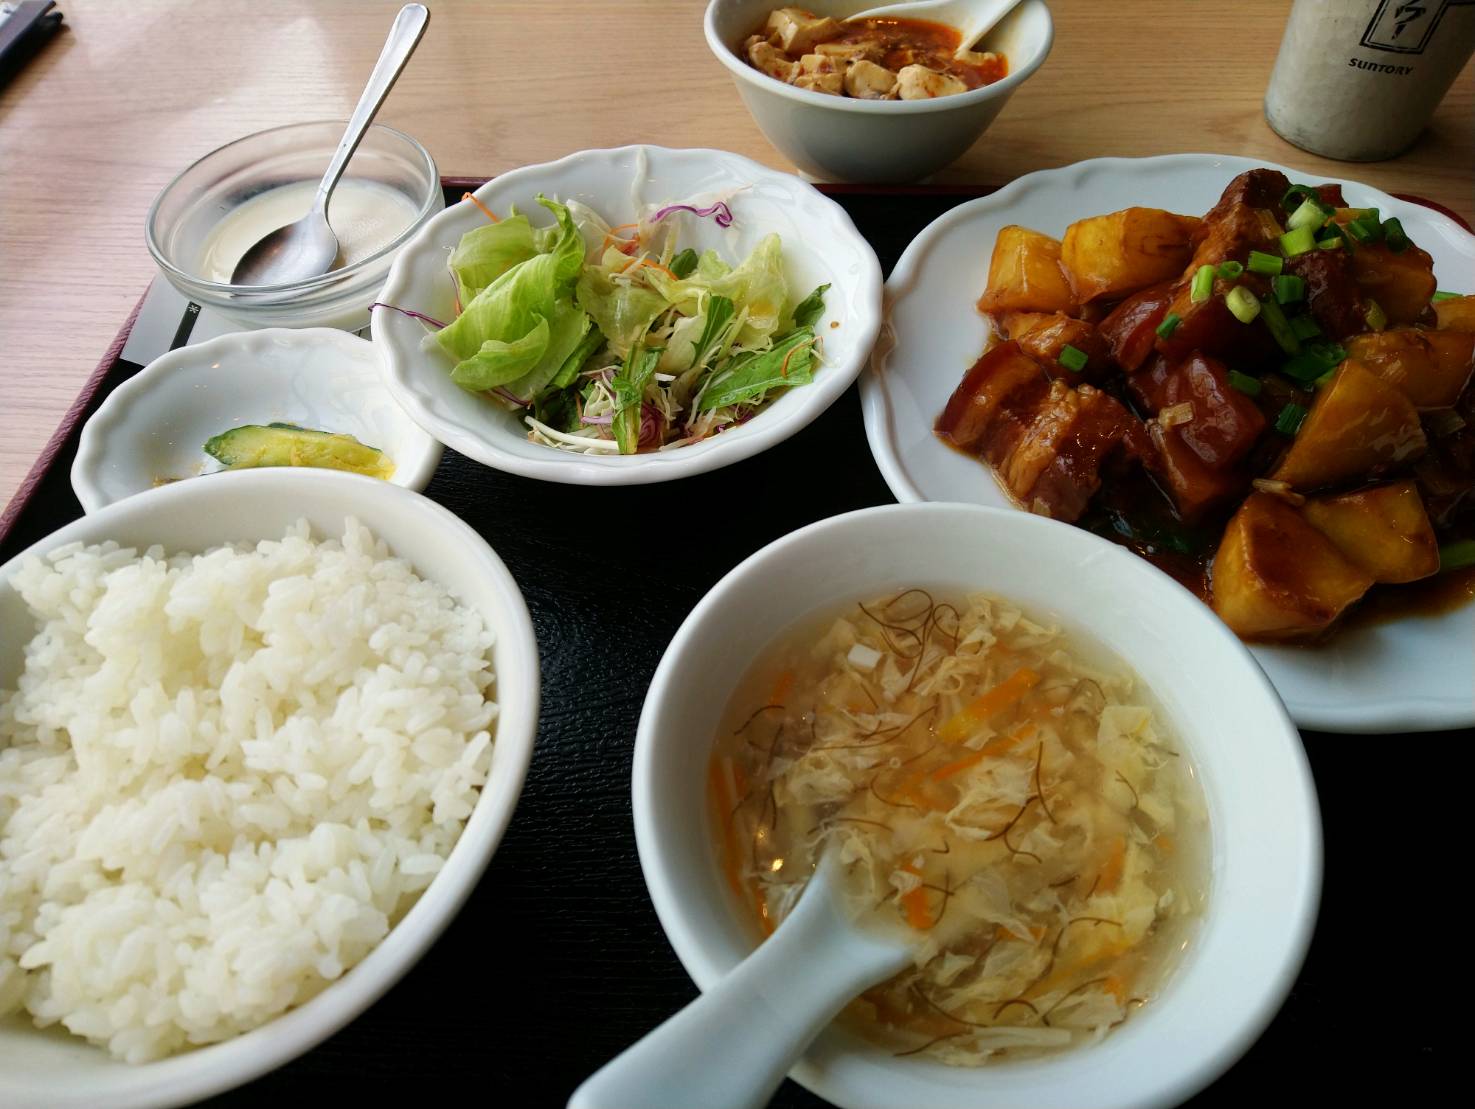 新荘園の秋葉原店で食べたランチ定食と麻婆豆腐